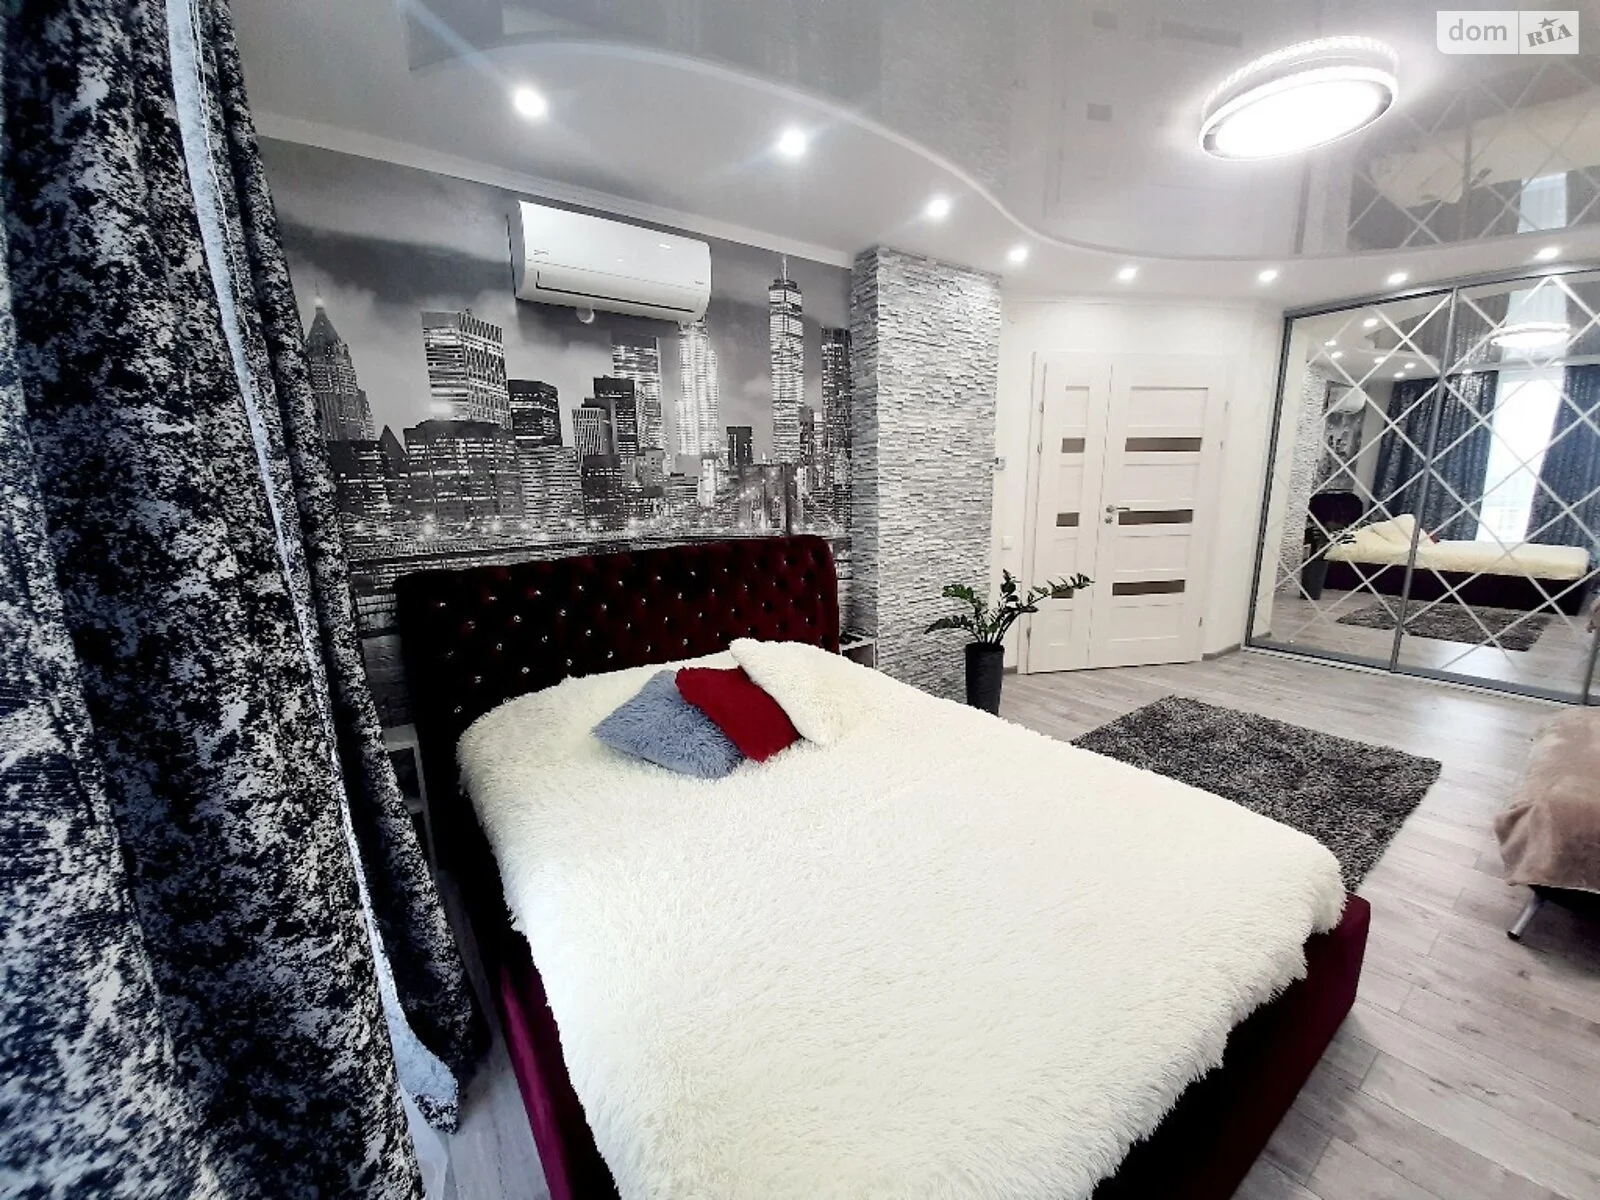 1-кімнатна квартира у Тернополі, цена: 1100 грн